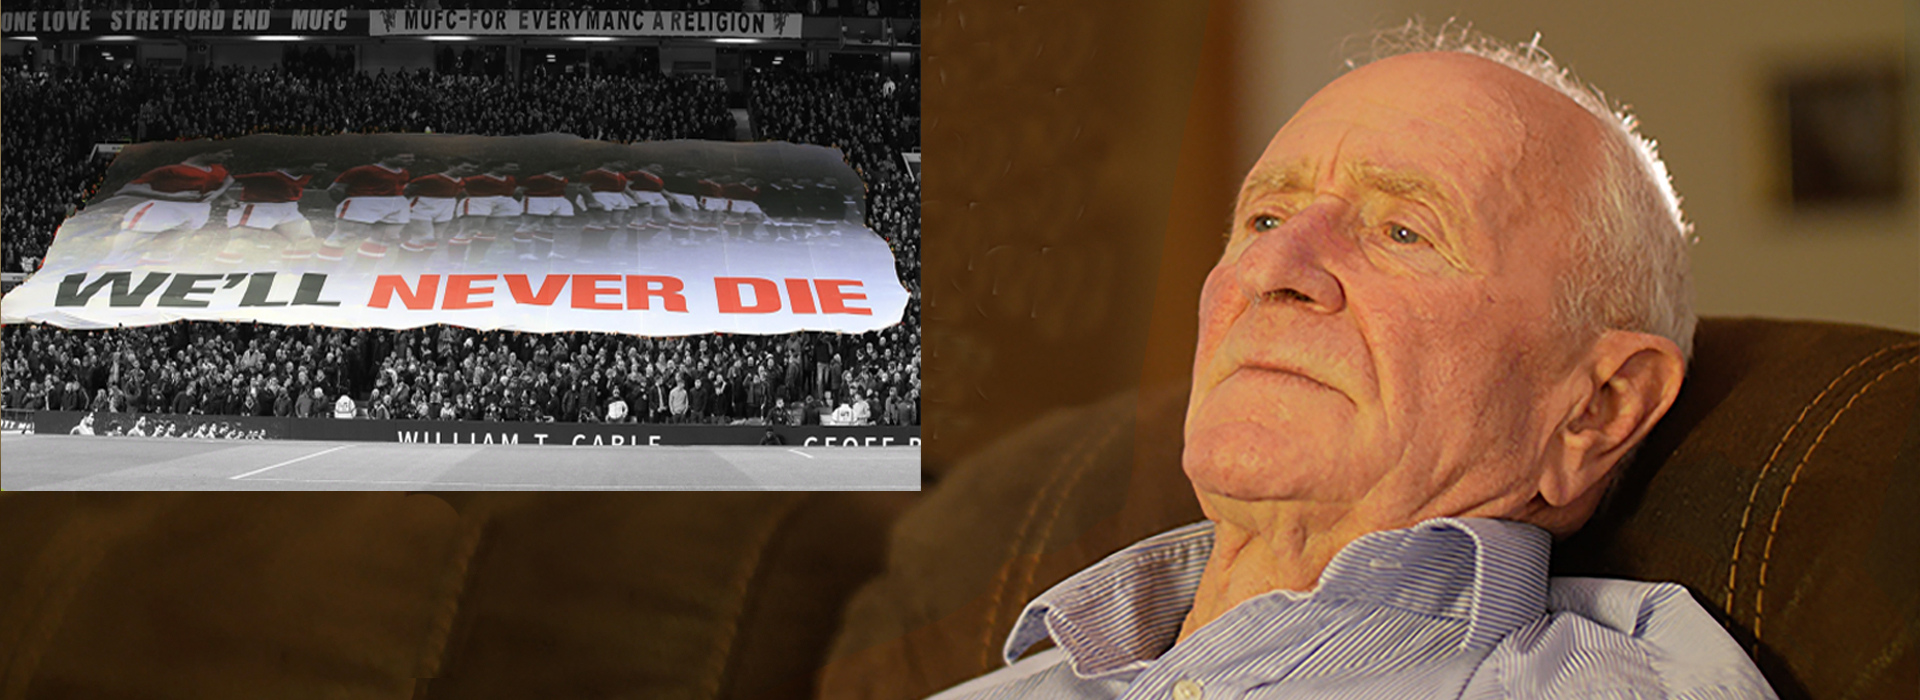 Harry Gregg & We Will Never Die banner